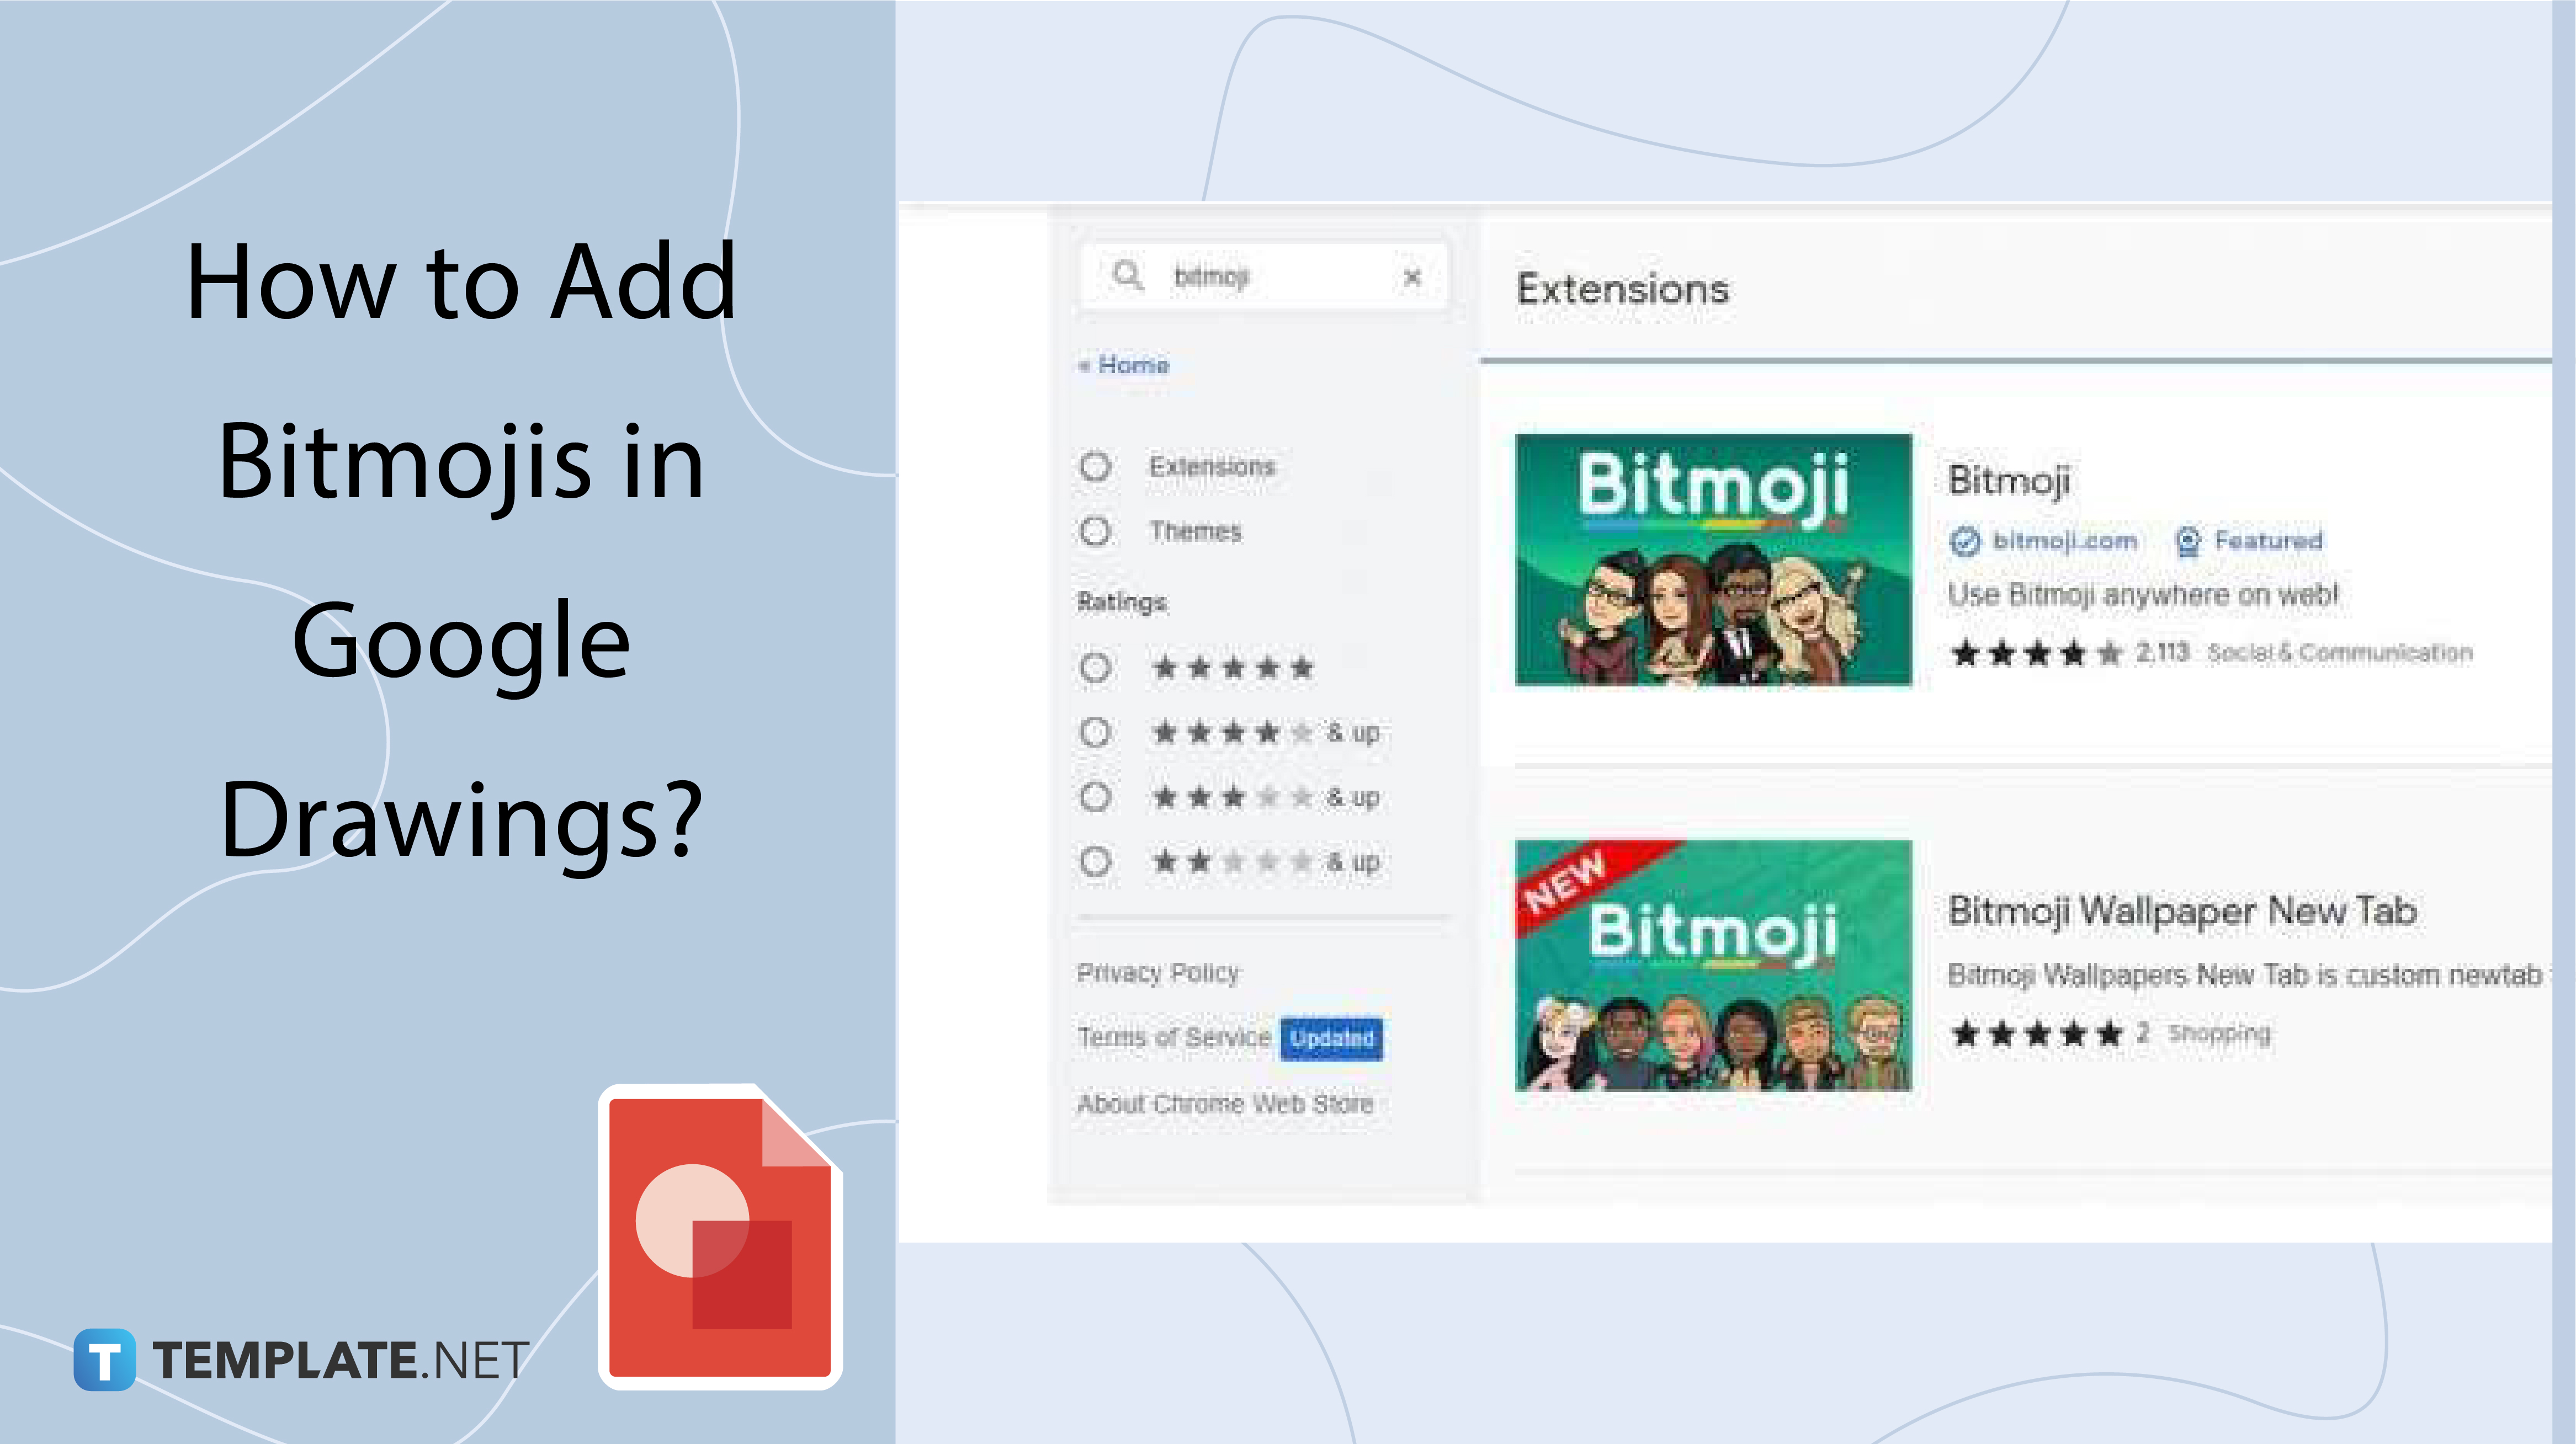 How to Add Bitmojis in Google Drawings?